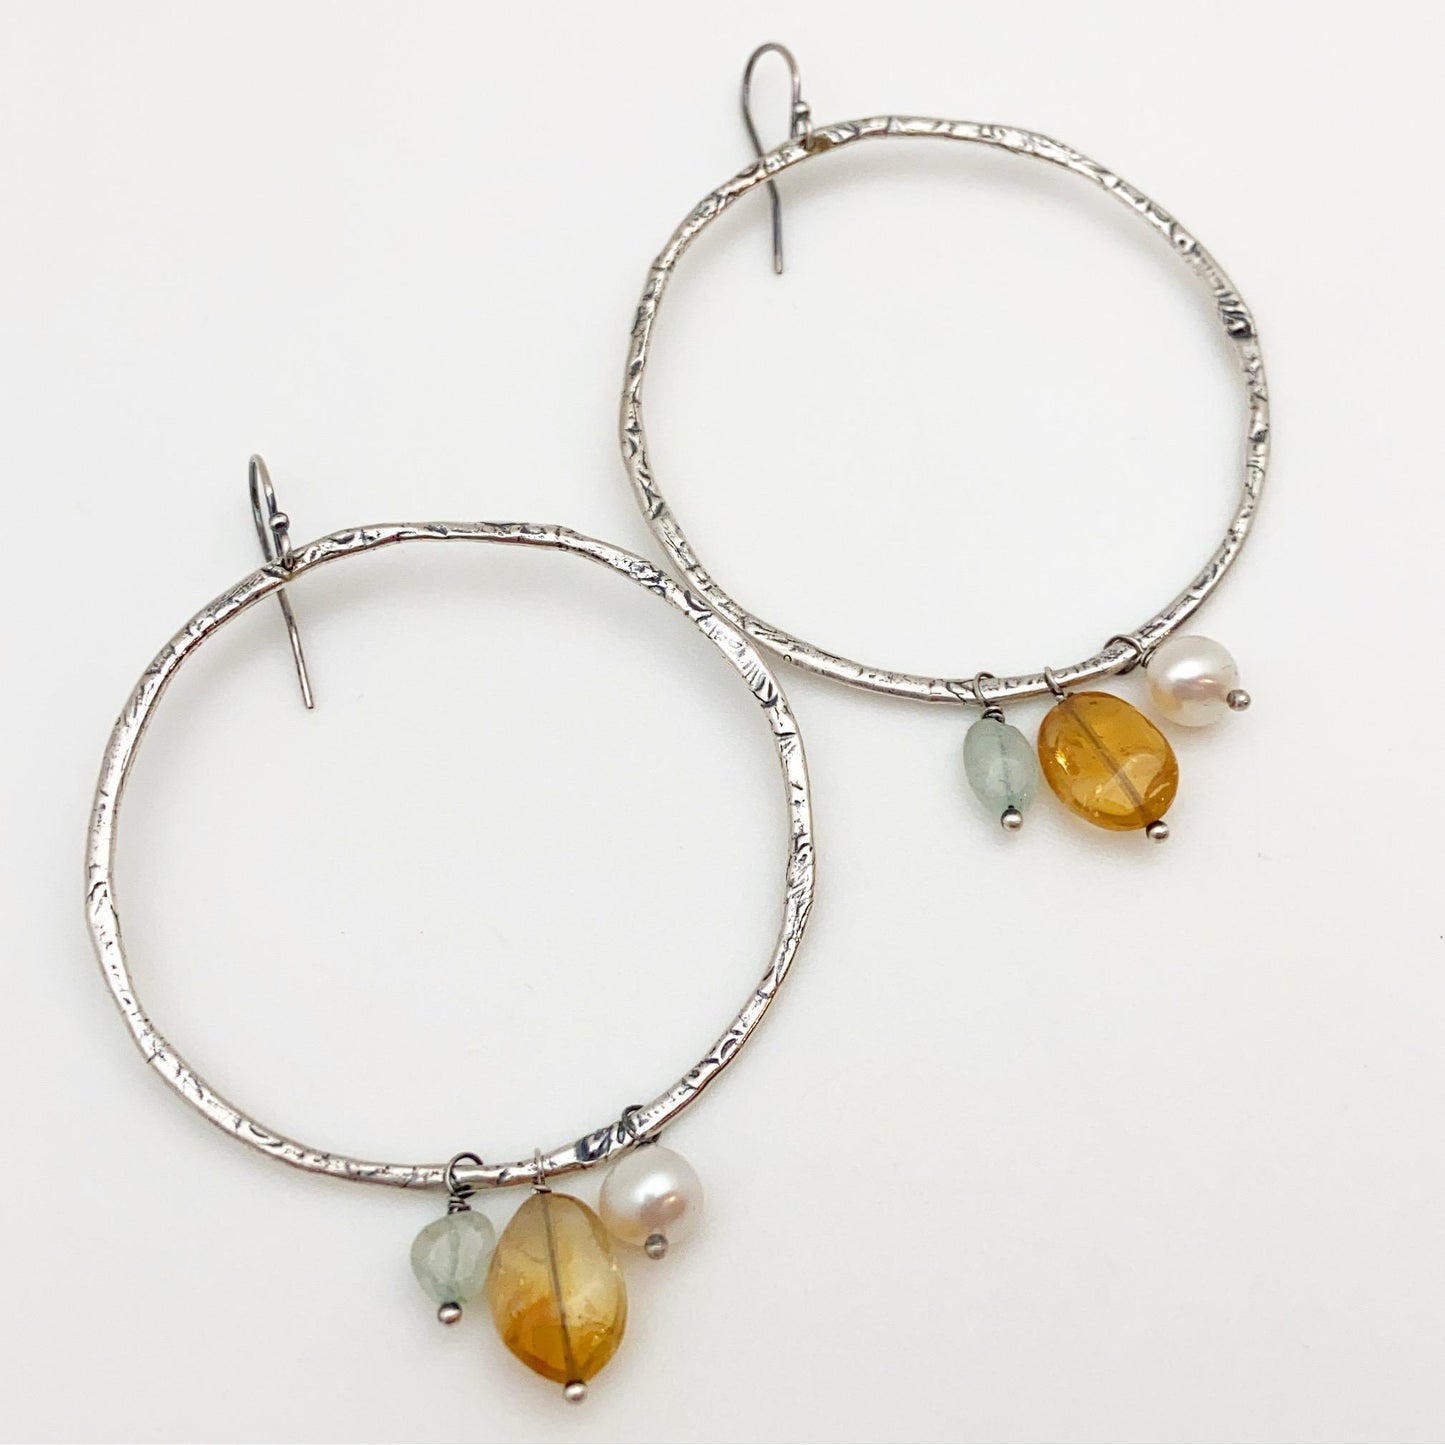 Earrings - Hoops with Gemstones - Sterling